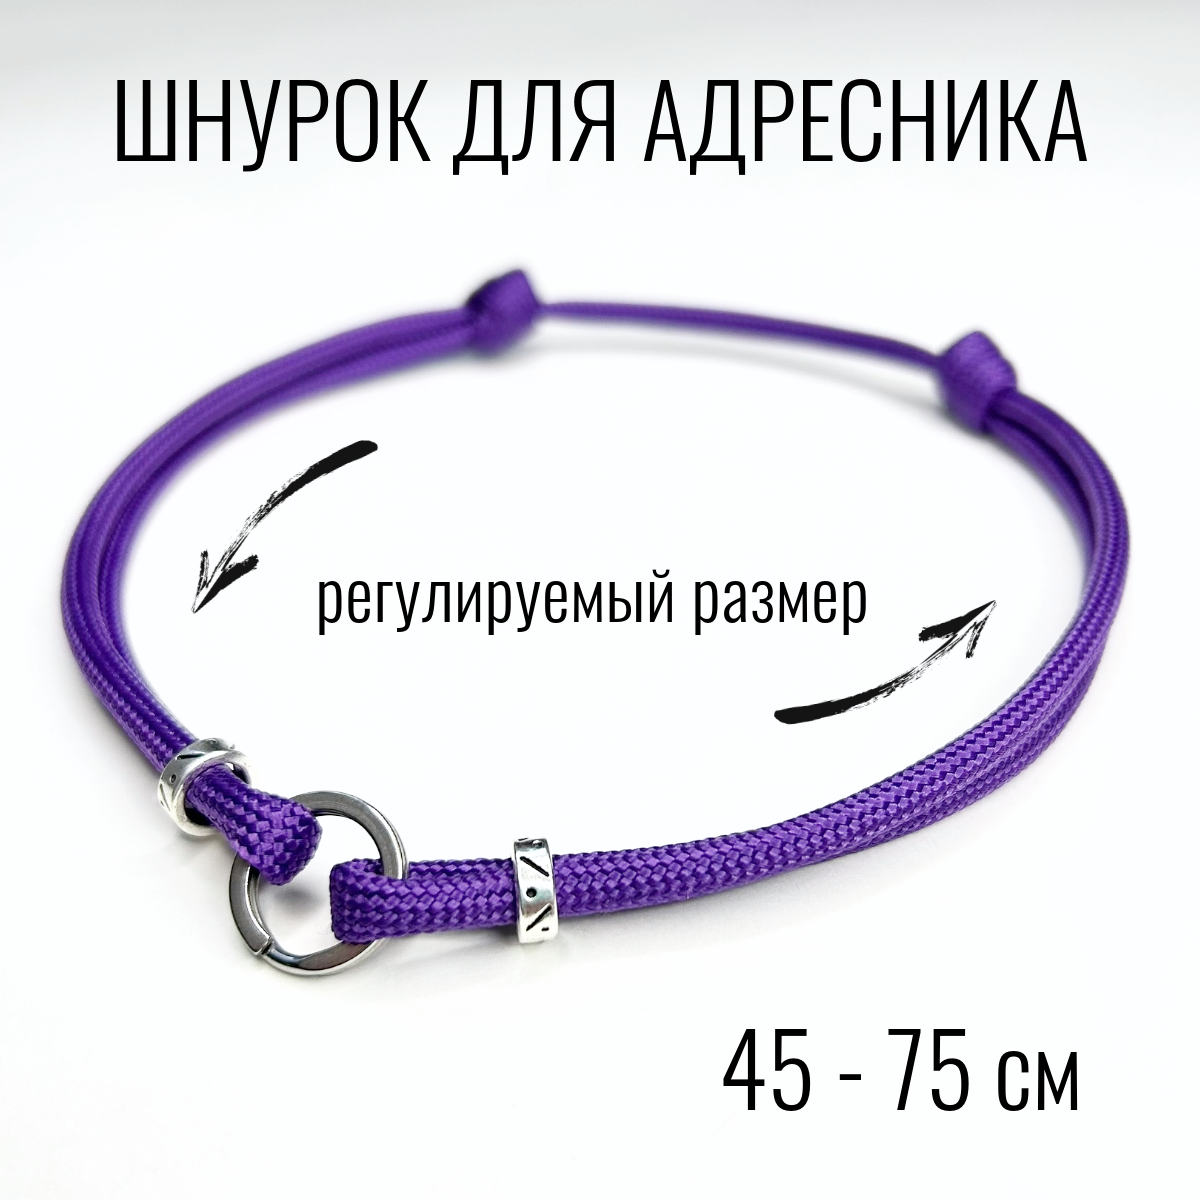 Шнурок для адресника Shani Workshop для собак, с кольцом и бусинами, фиолетовый, 45-75 см